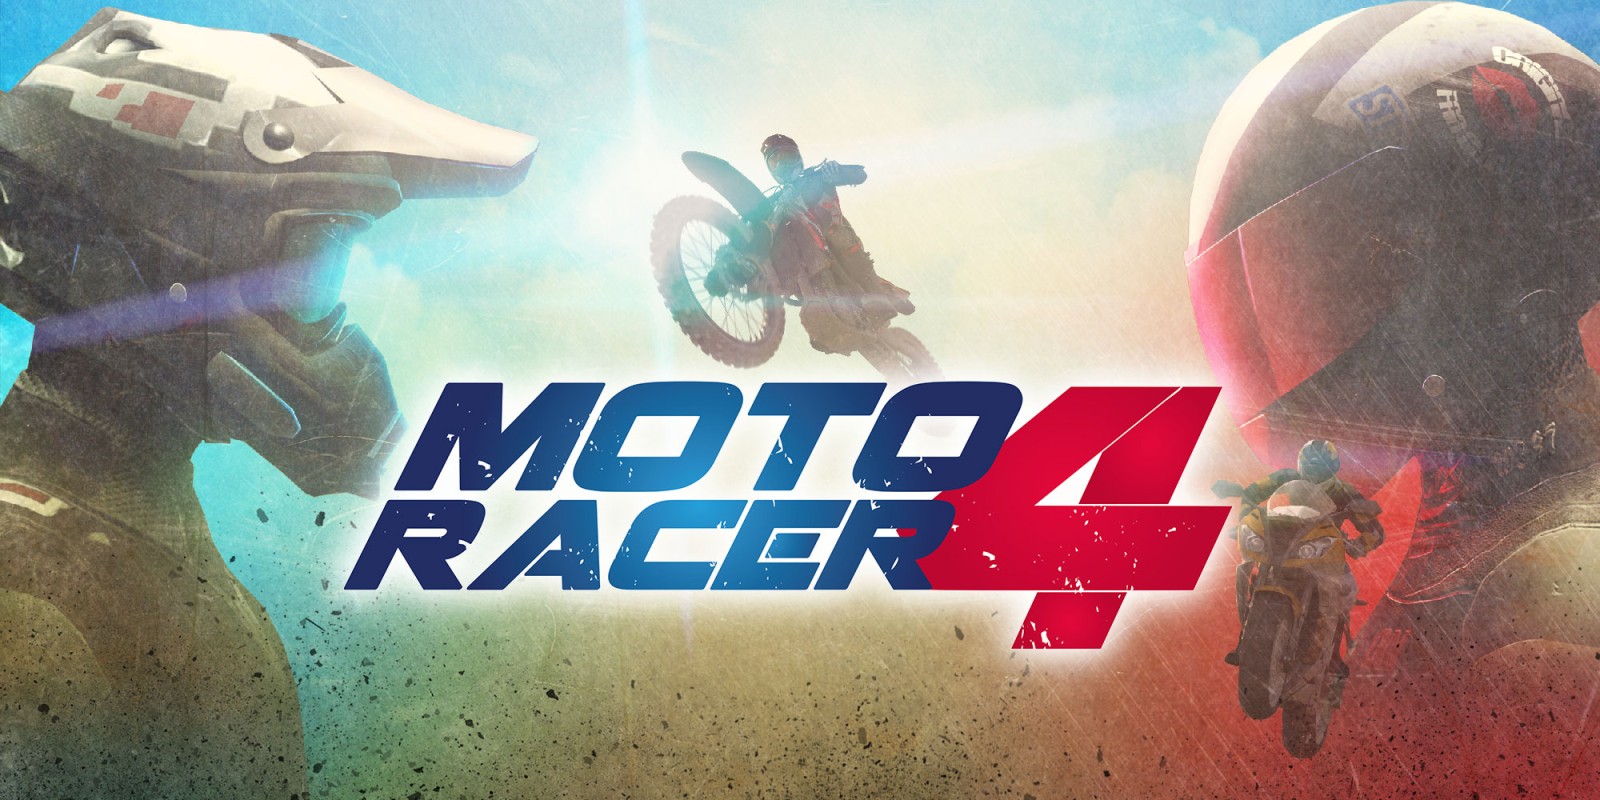 Moto racer game free download